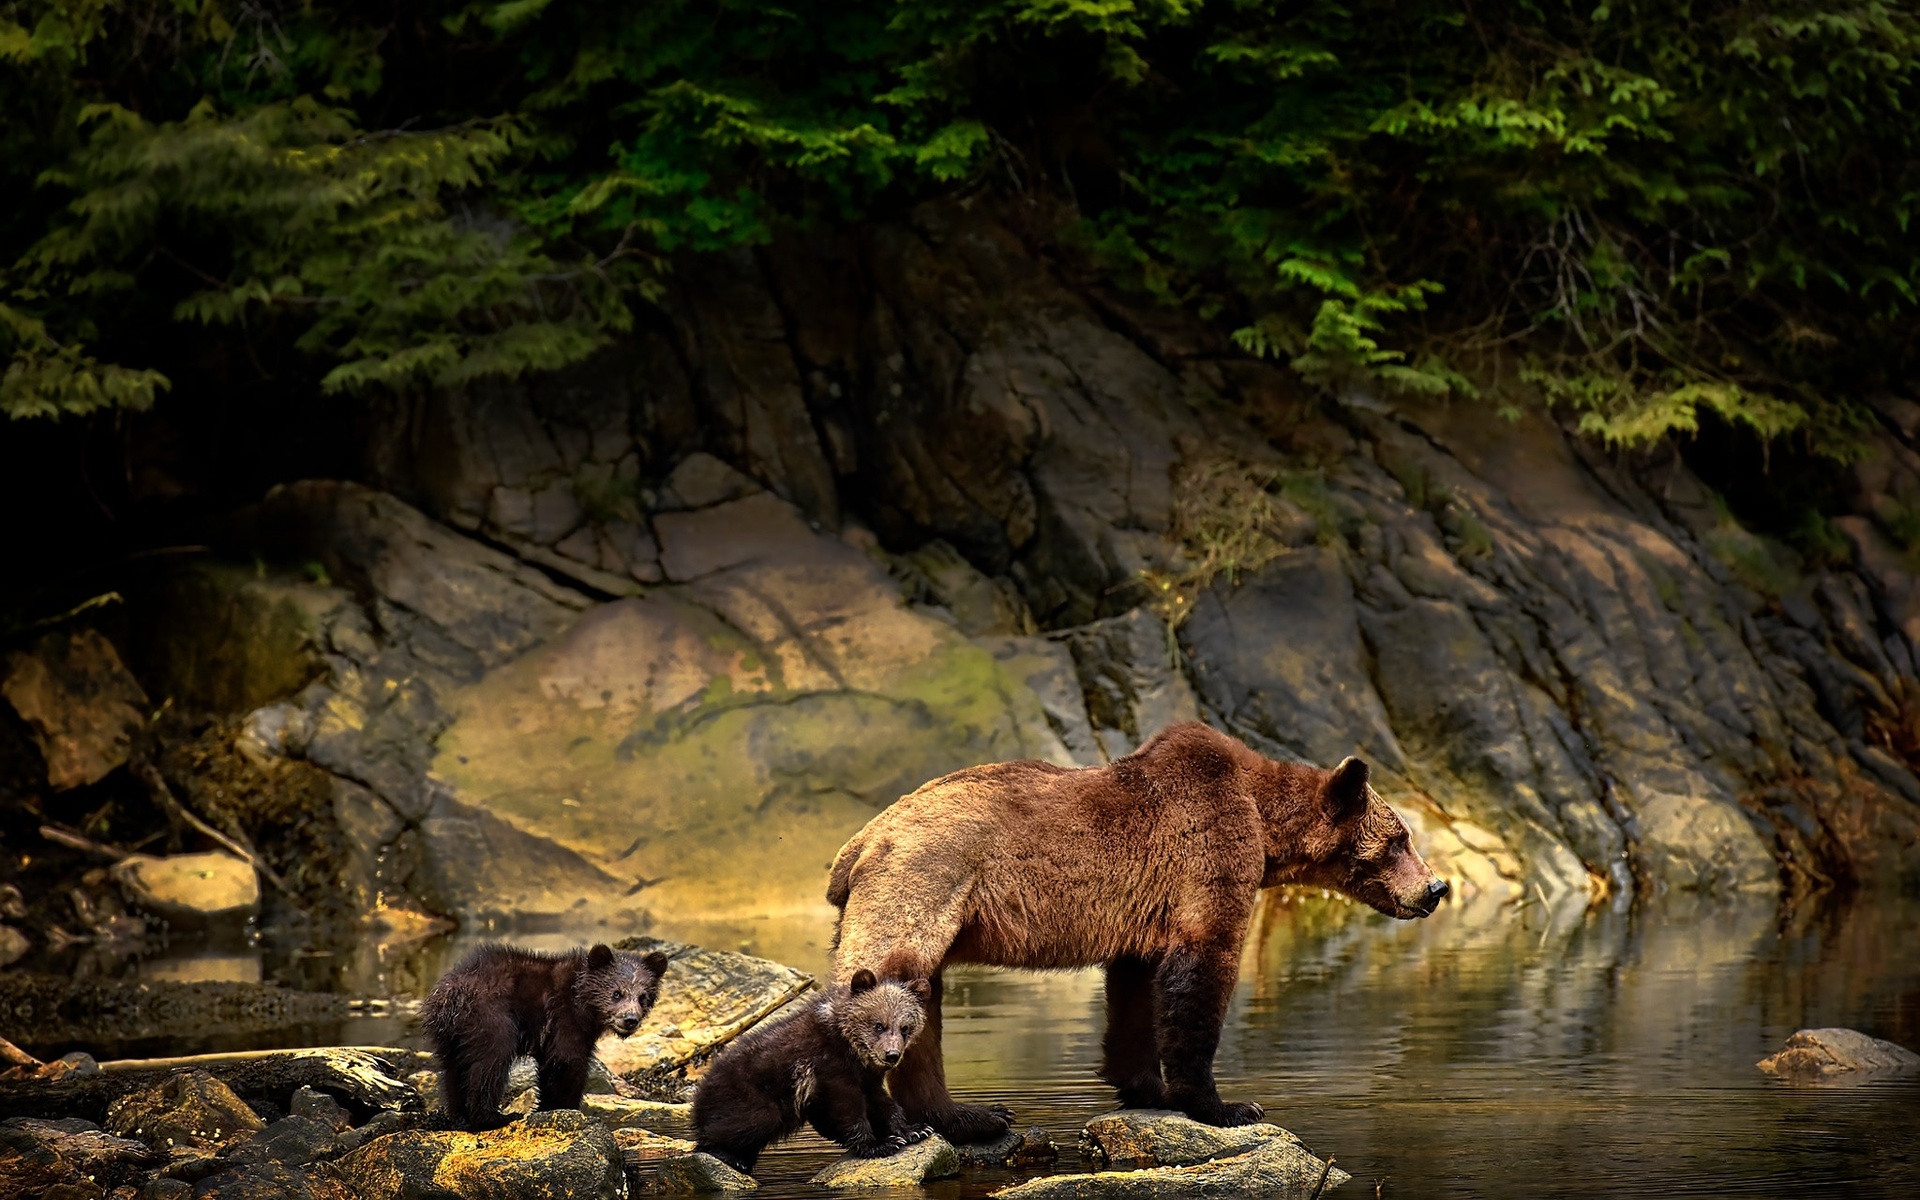 Free download wallpaper Bears, Bear, Animal, Baby Animal on your PC desktop